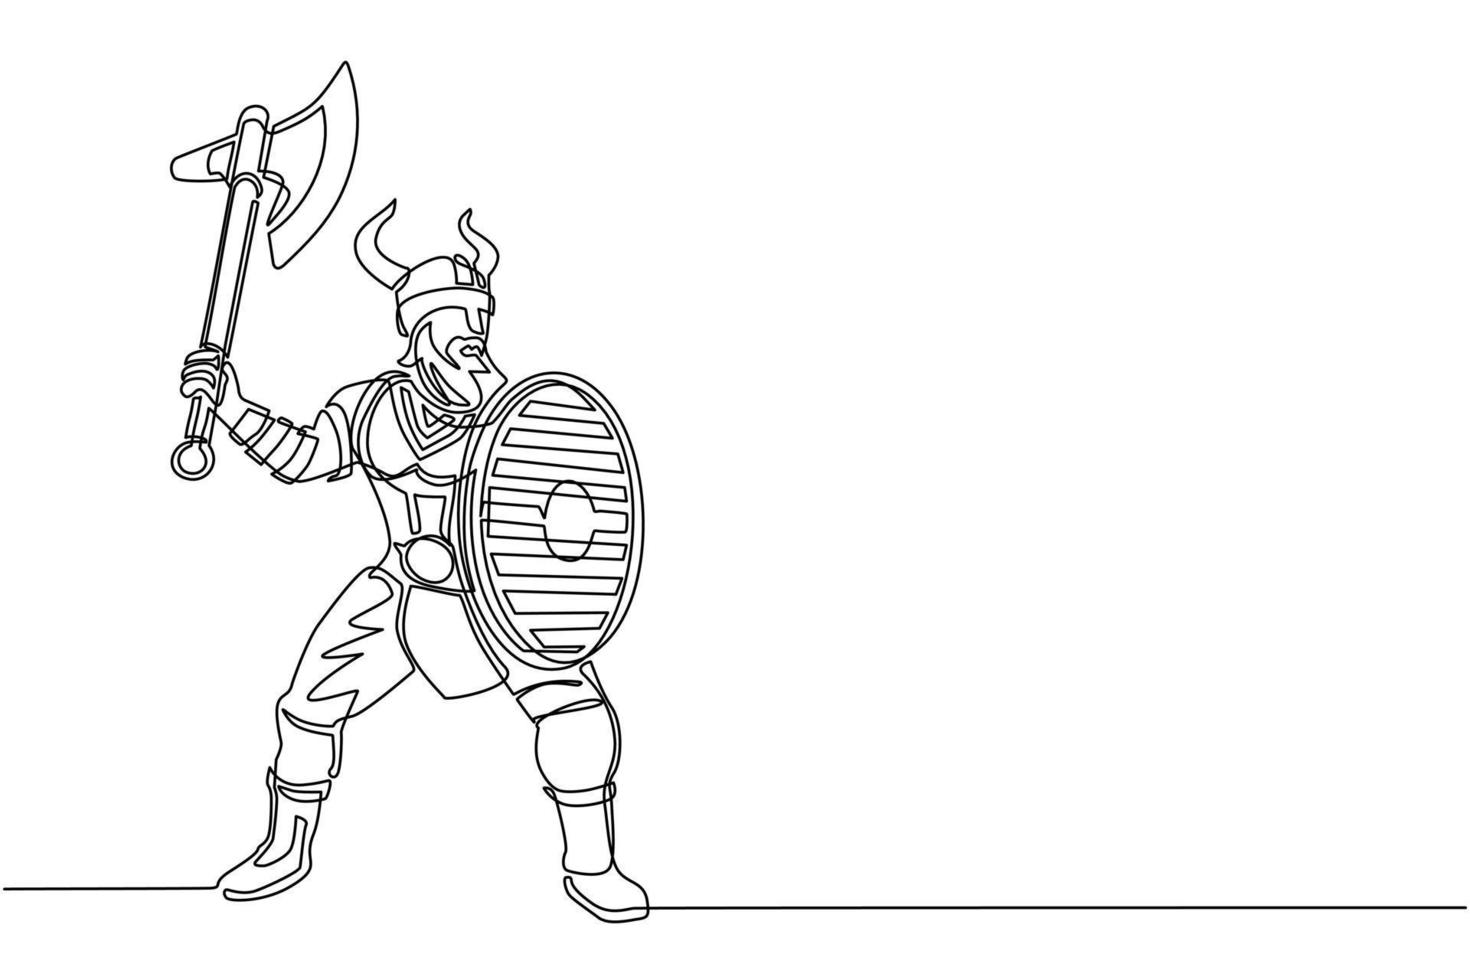 un solo dibujo de una línea, un gran guerrero naranja muscular fuerte vikingo con hacha y escudo ataca furiosamente. vikingo con casco con cuernos sosteniendo hacha y escudo. ilustración de vector de diseño de dibujo de línea continua